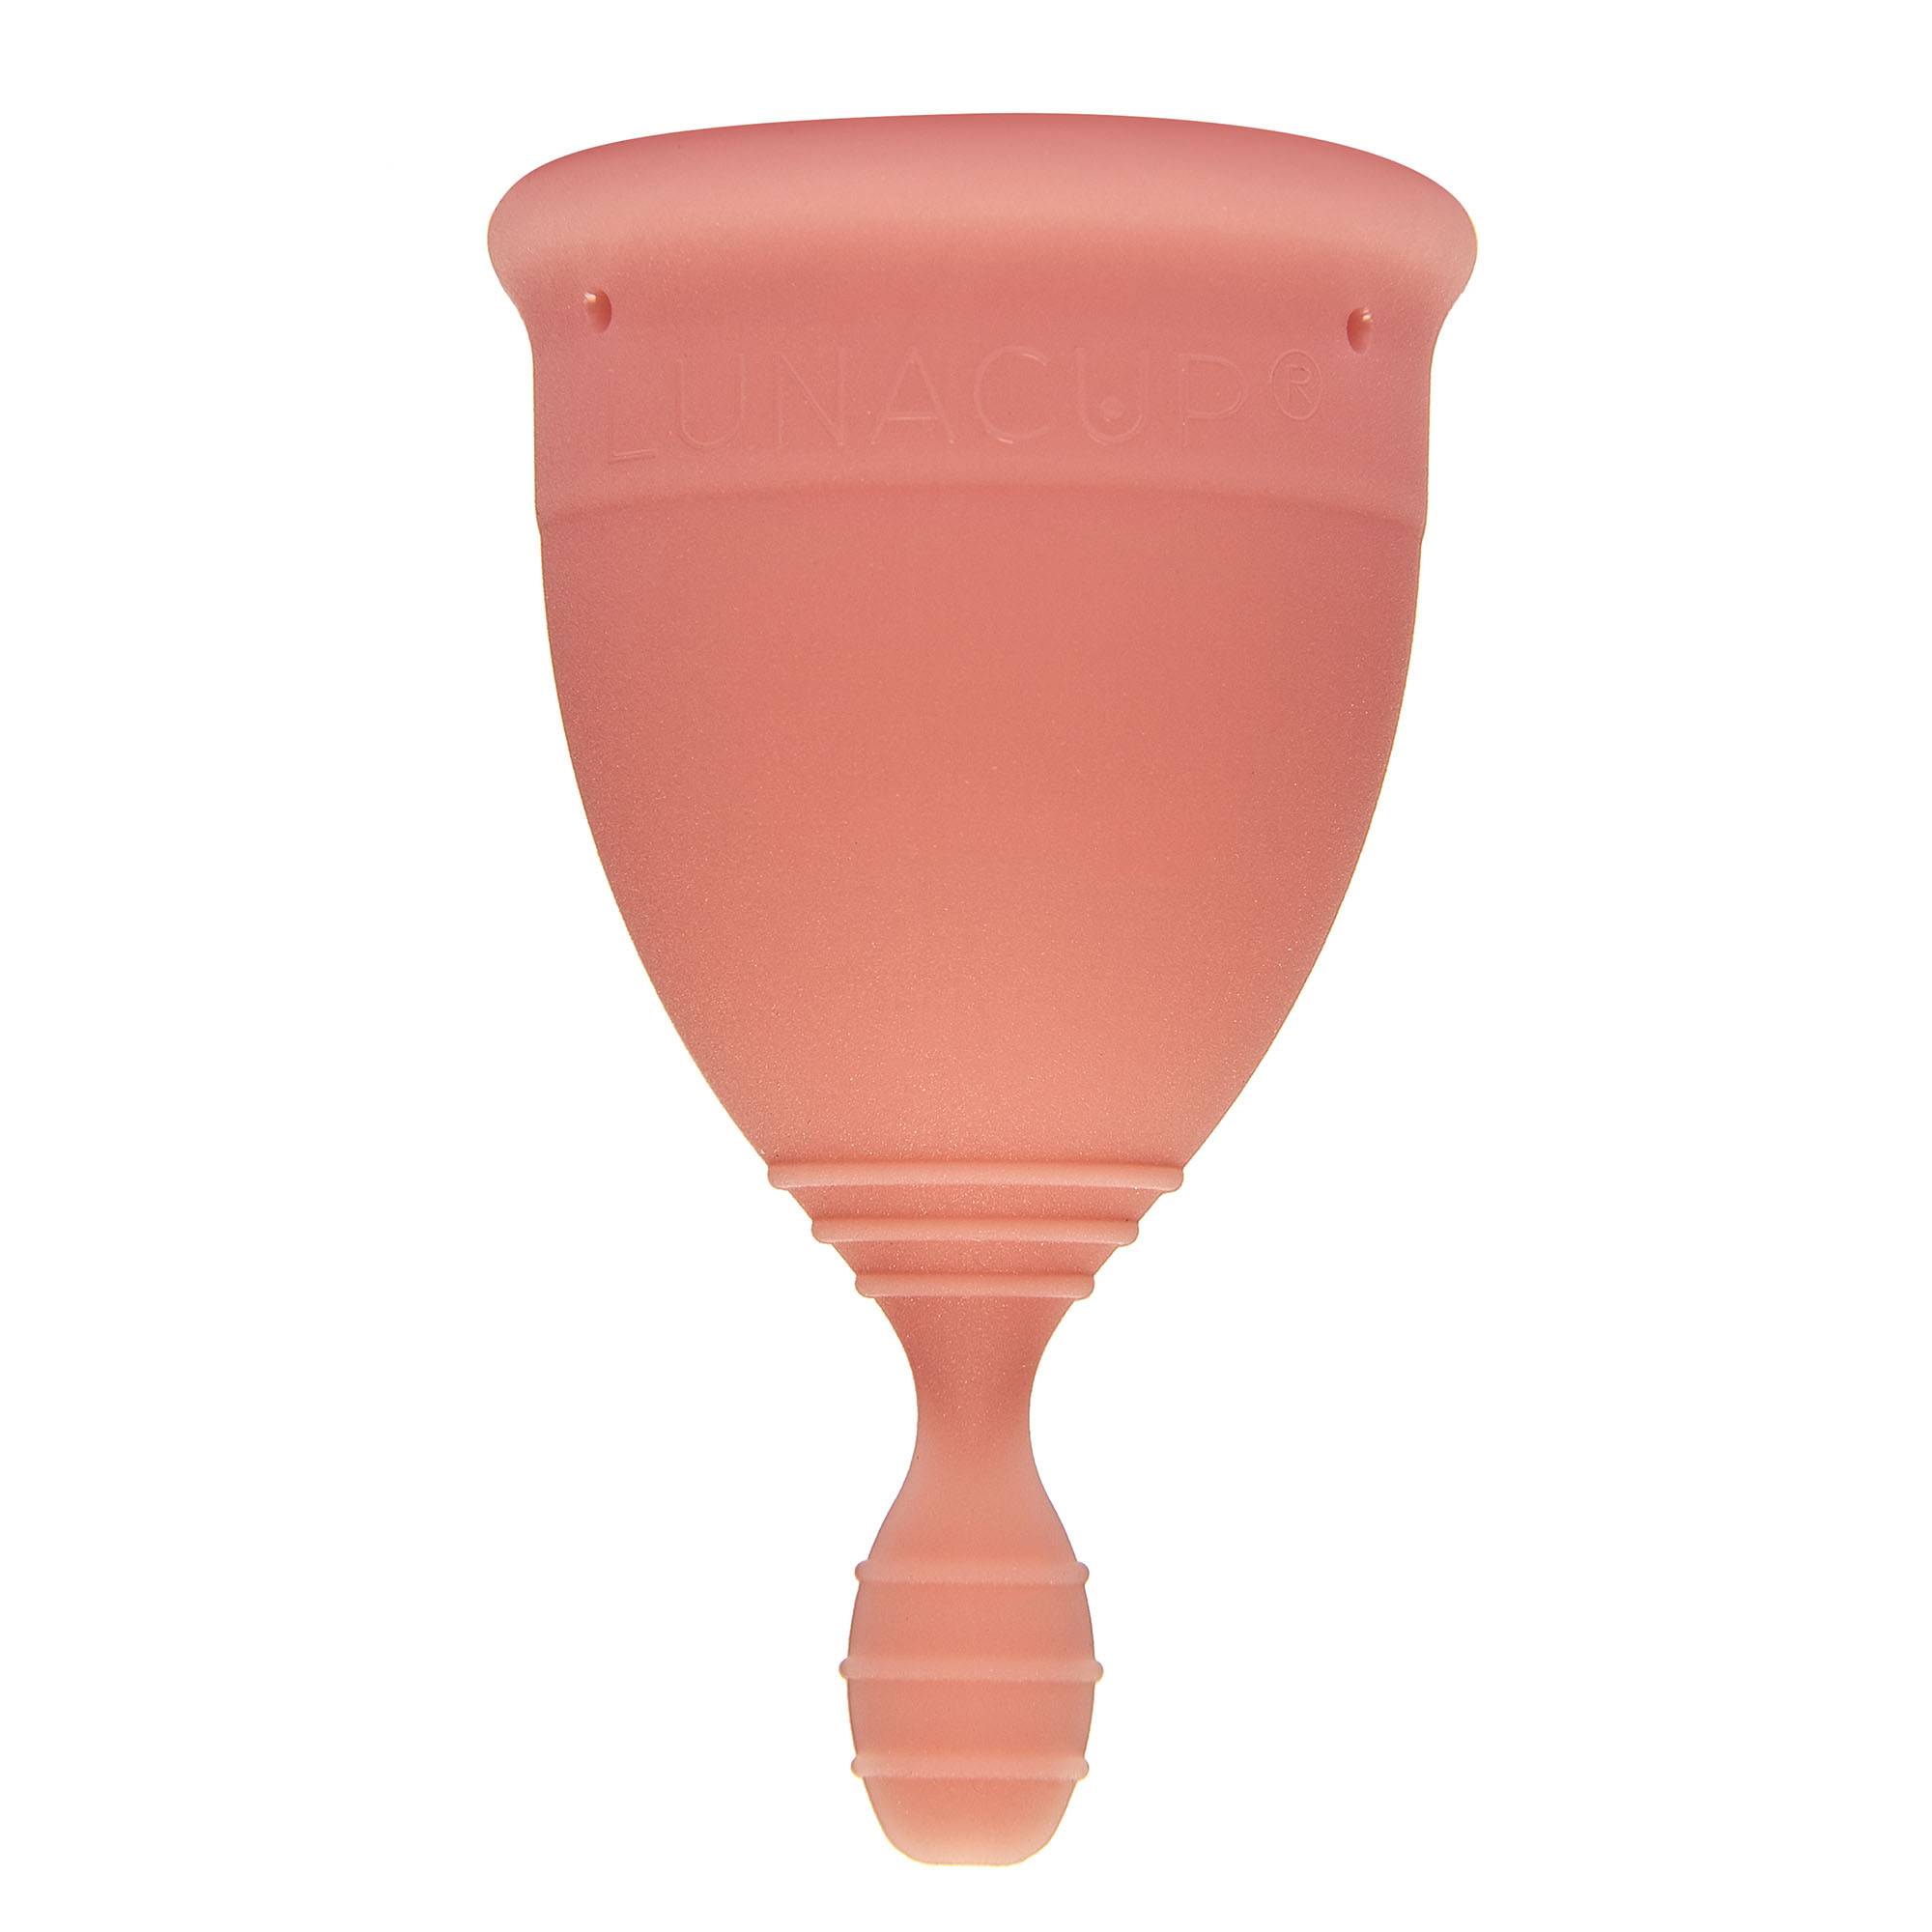 Menstrualna skodelica LUNACUP v marelični barvi